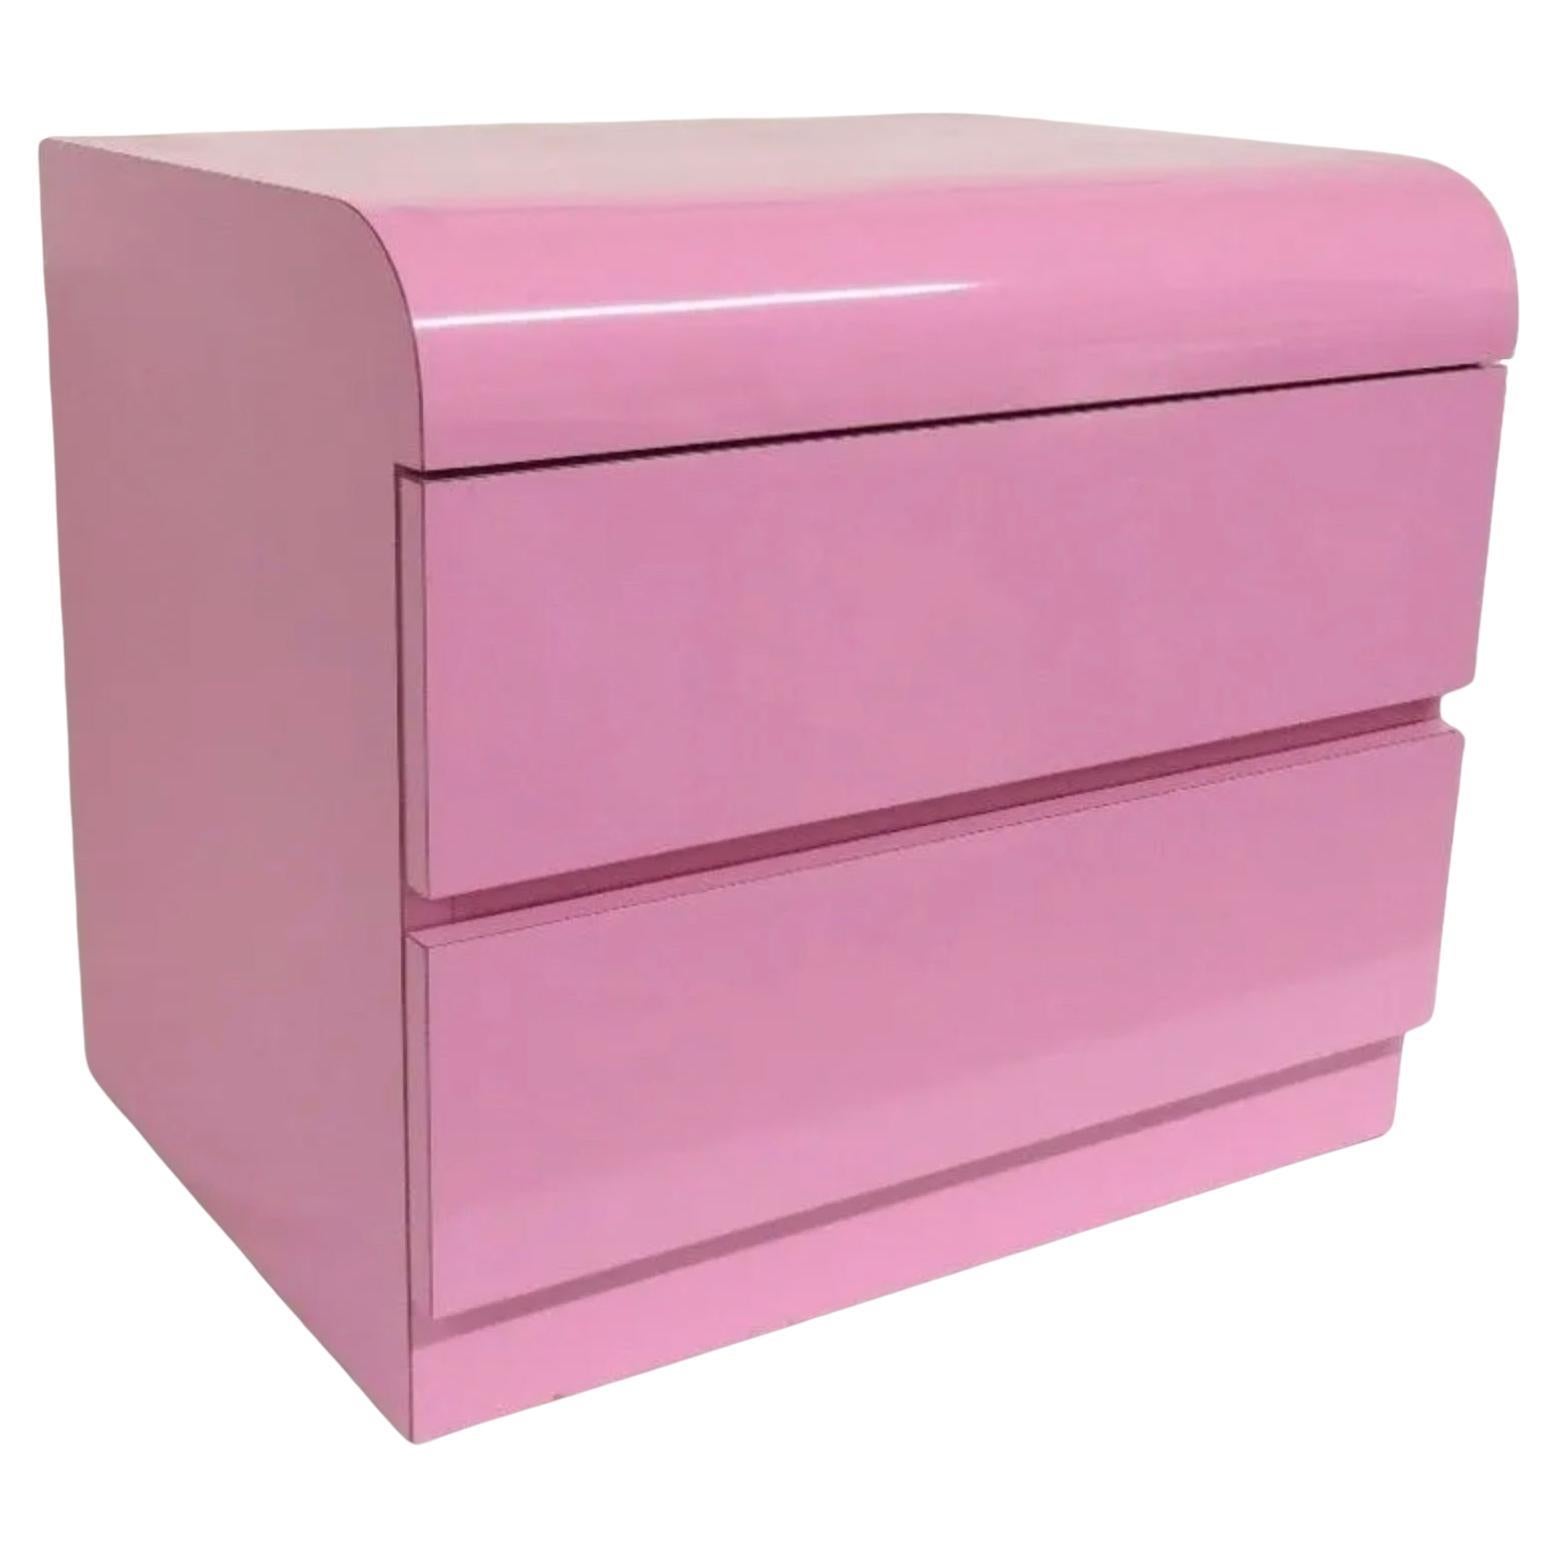 Postmoderner Nachttisch mit 2 Schubladen aus rosafarbenem, glänzendem Laminat und Wasserfall